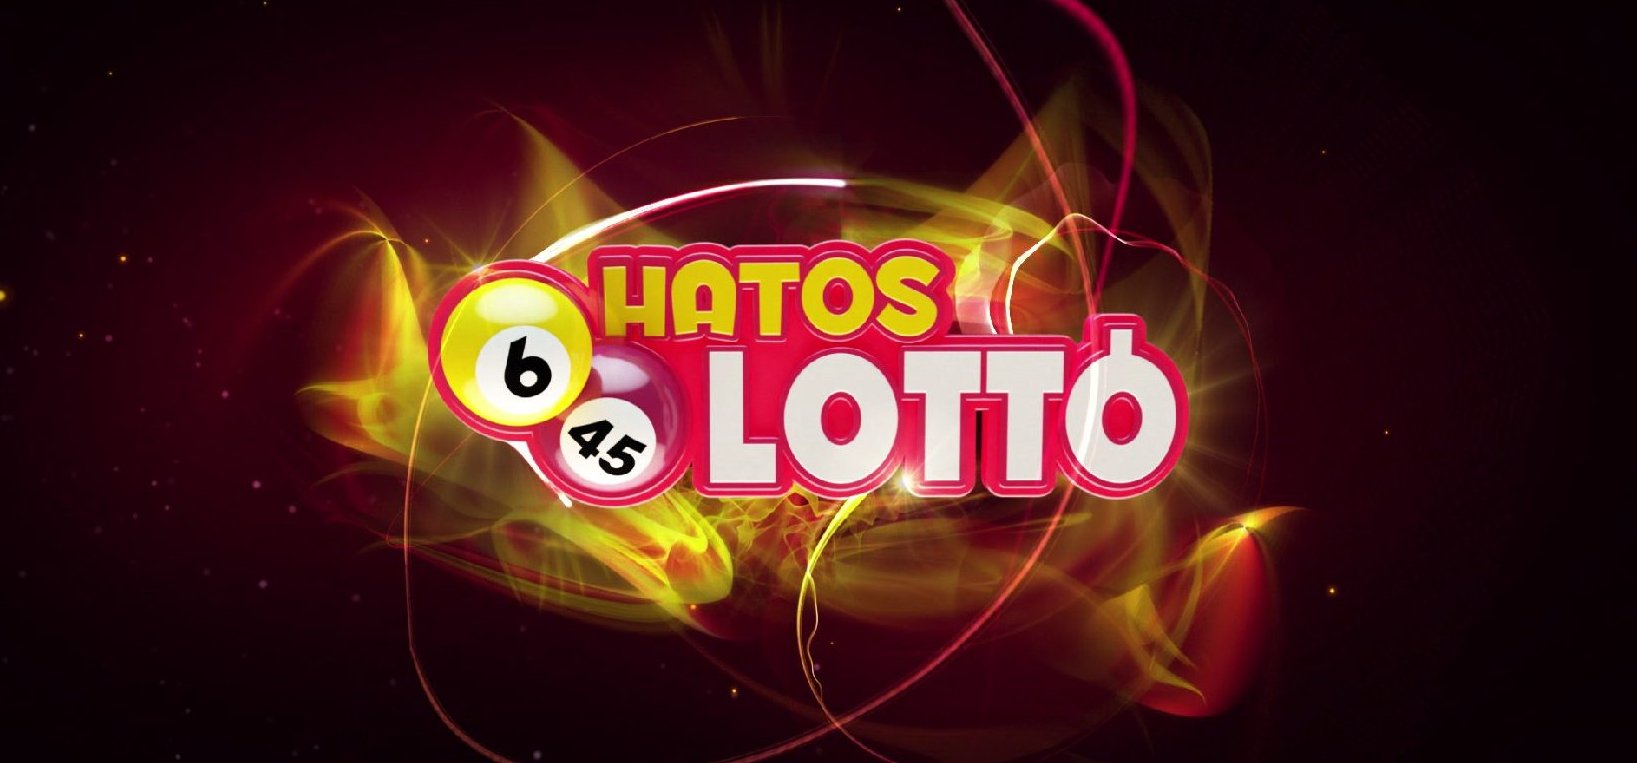 Hatoslottó: még az ötös lottón sincs ekkora főnyeremény – vajon elvitte valaki a 815 millió forintot?